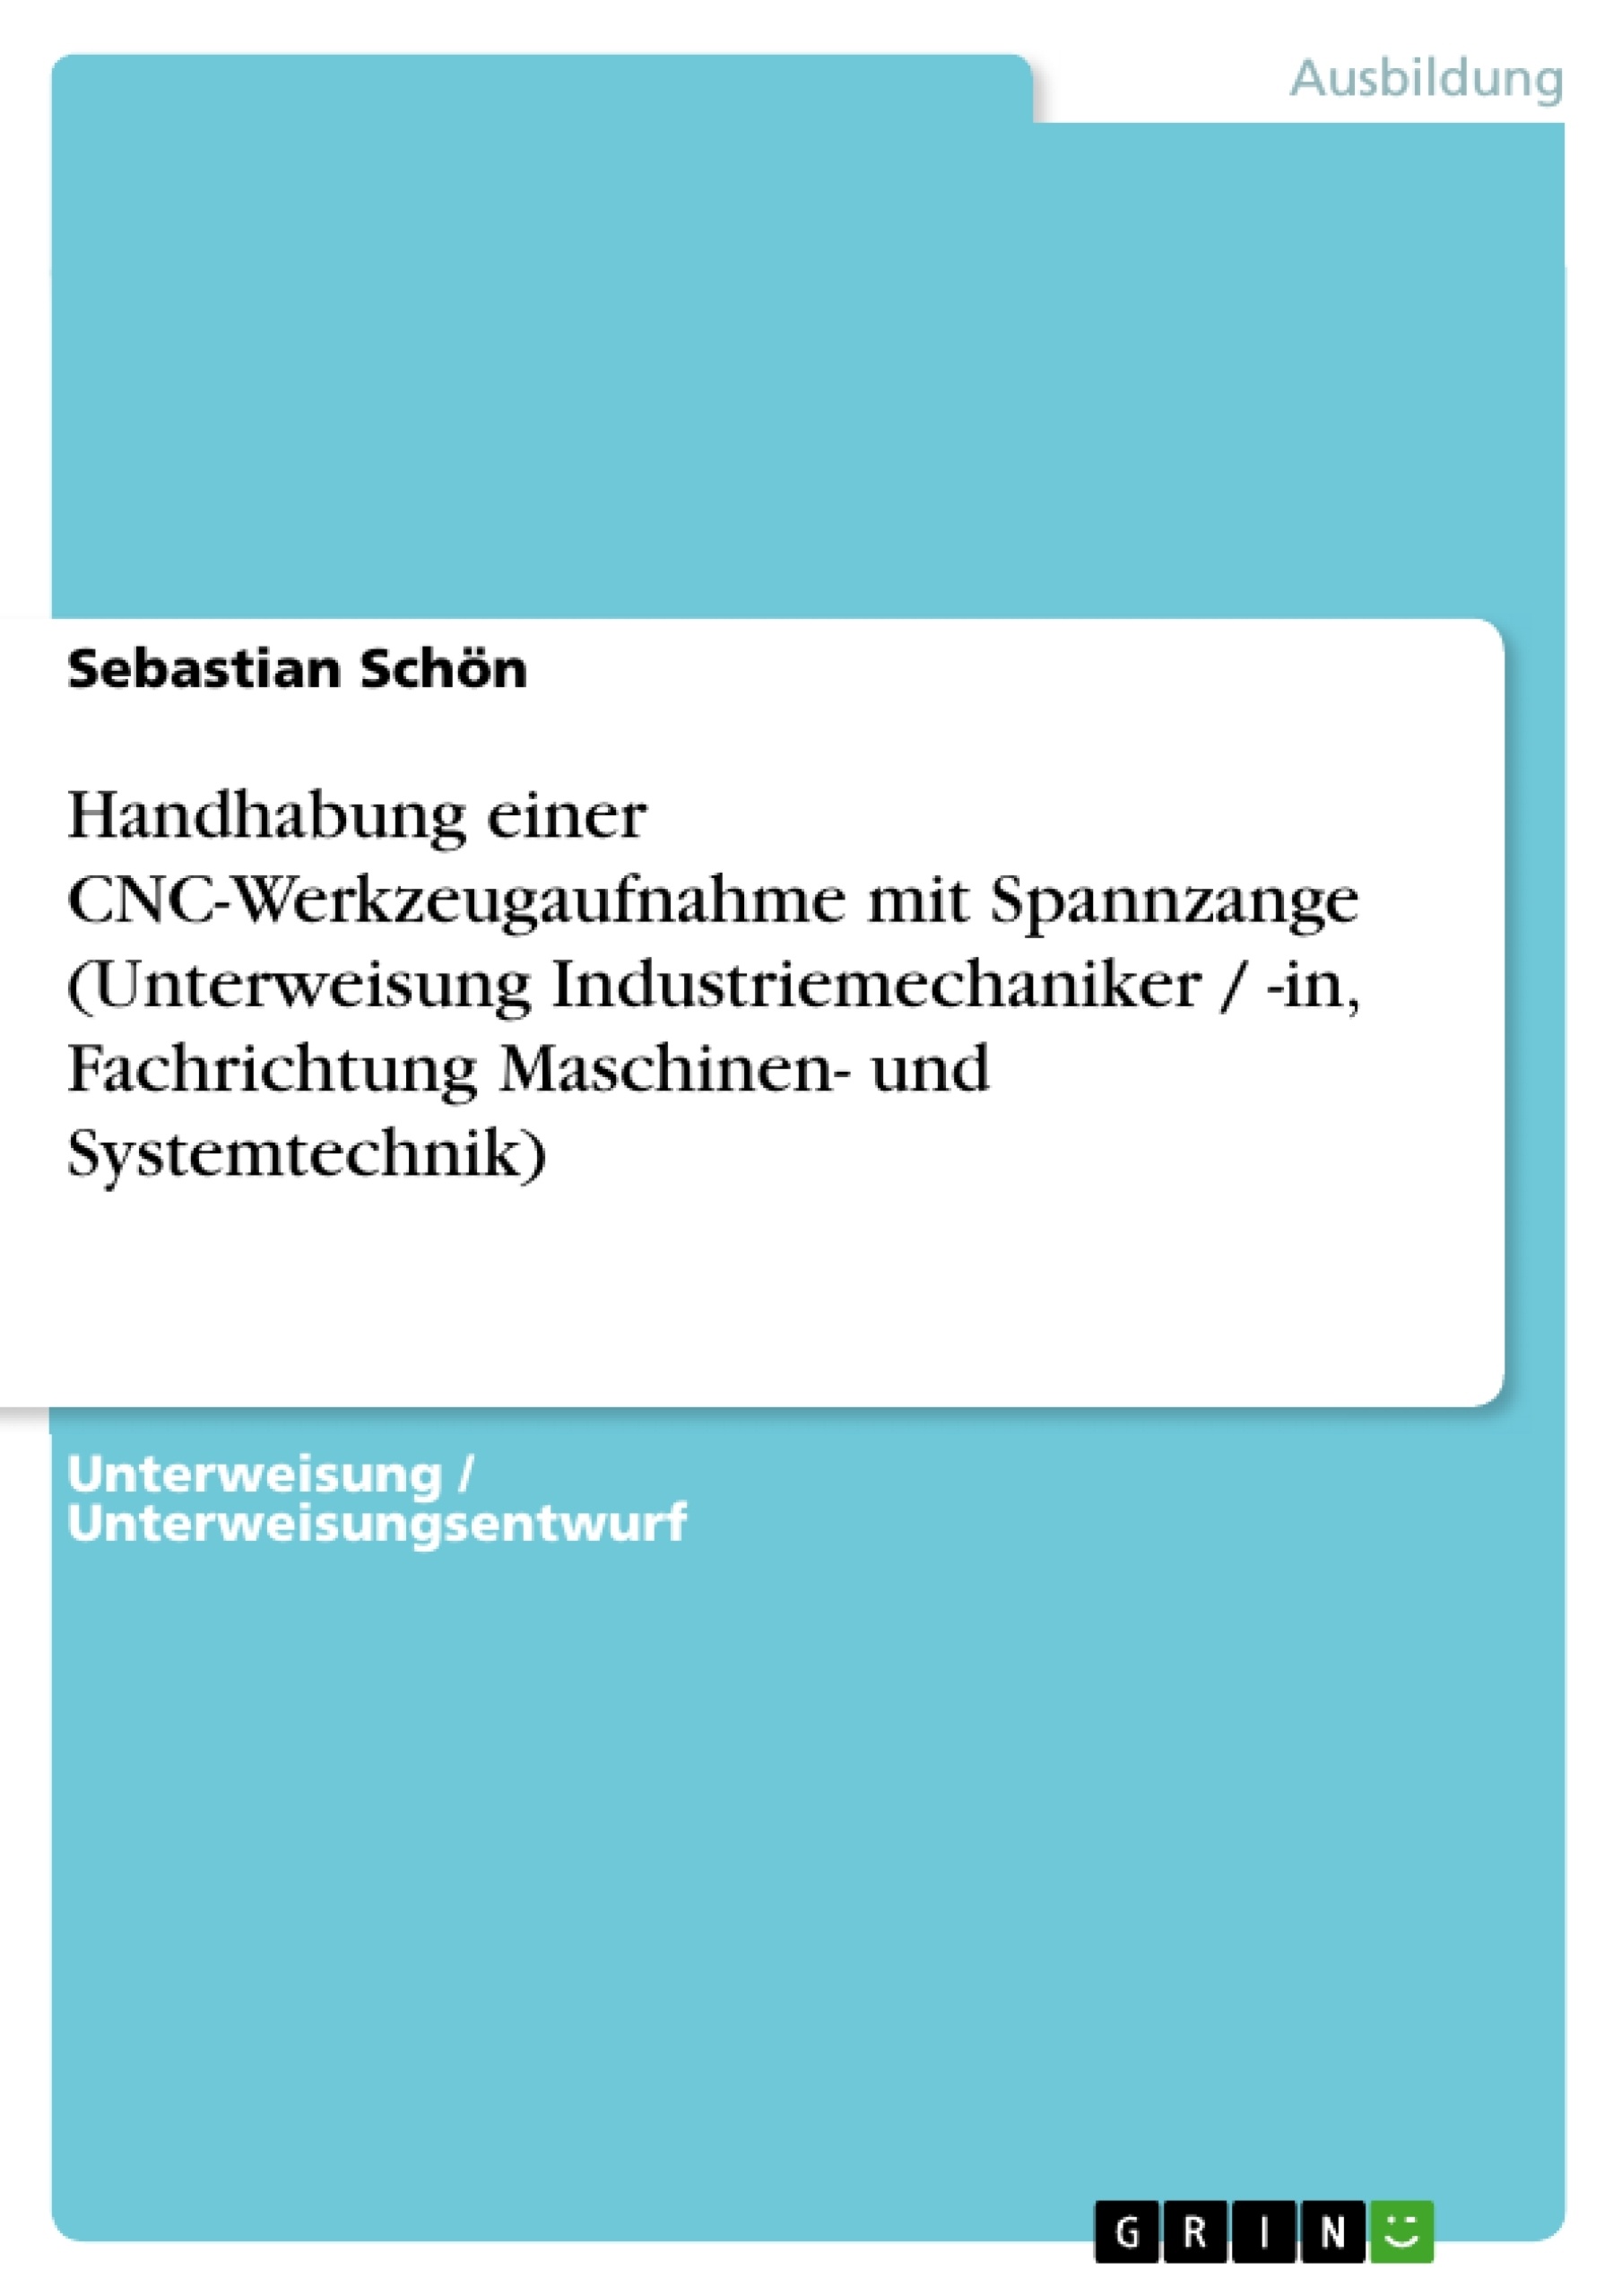 Título: Handhabung einer CNC-Werkzeugaufnahme mit Spannzange (Unterweisung Industriemechaniker / -in, Fachrichtung Maschinen- und Systemtechnik)